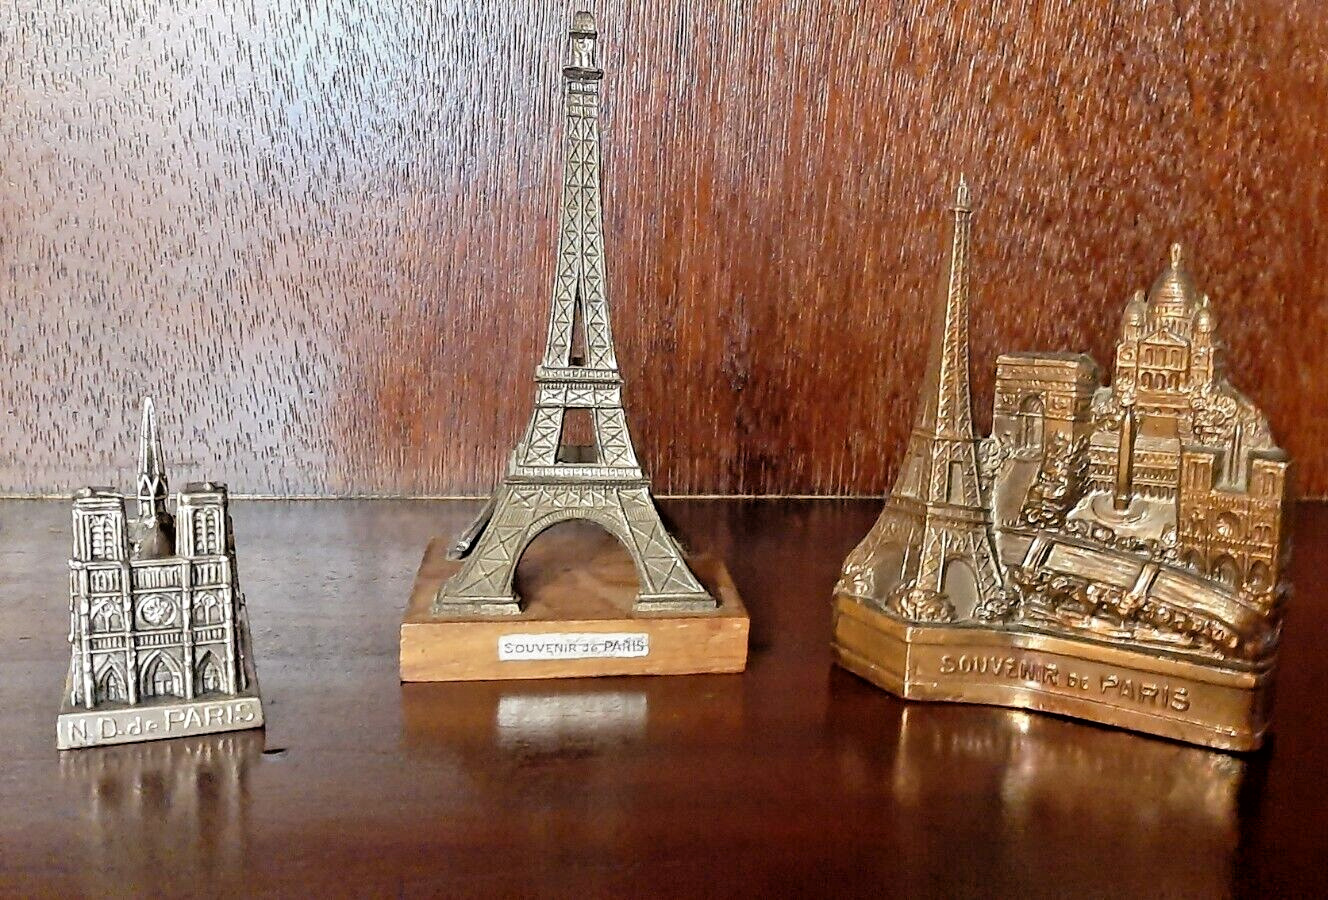 Lot of 3 Paris Souvenir Building Landmarks: Notre Dame, Eiffel Tower, Cityscape